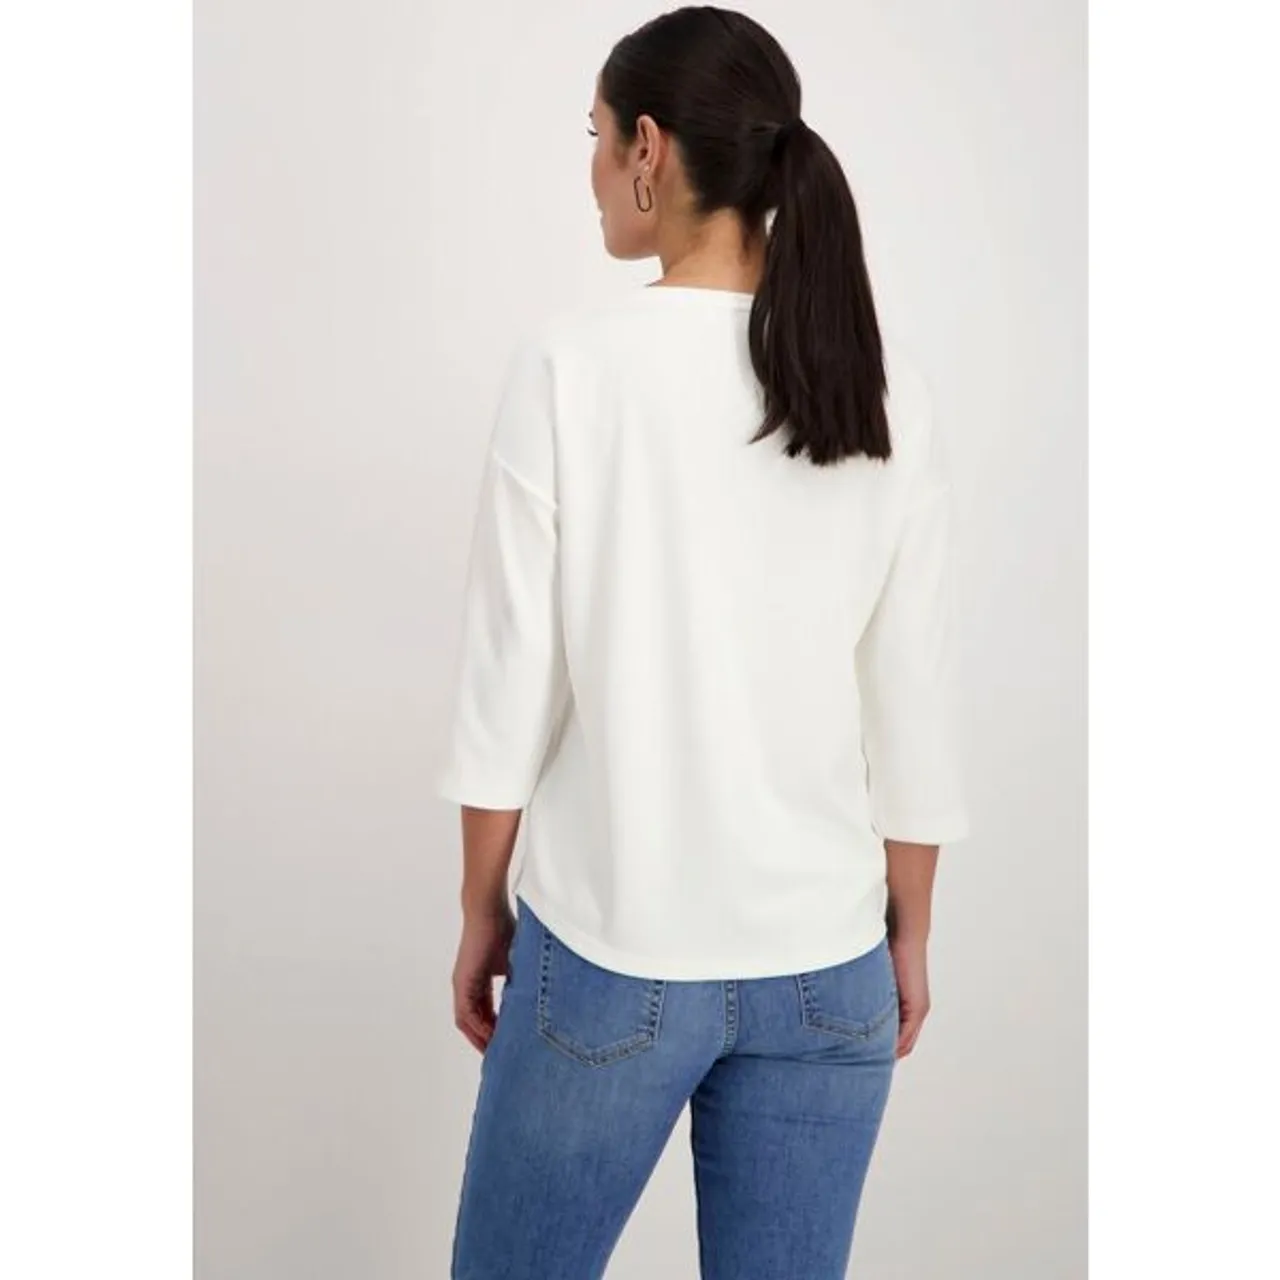 Sweatshirt MONARI Gr. 44, weiß (offwhite) Damen Sweatshirts mit Frontprint